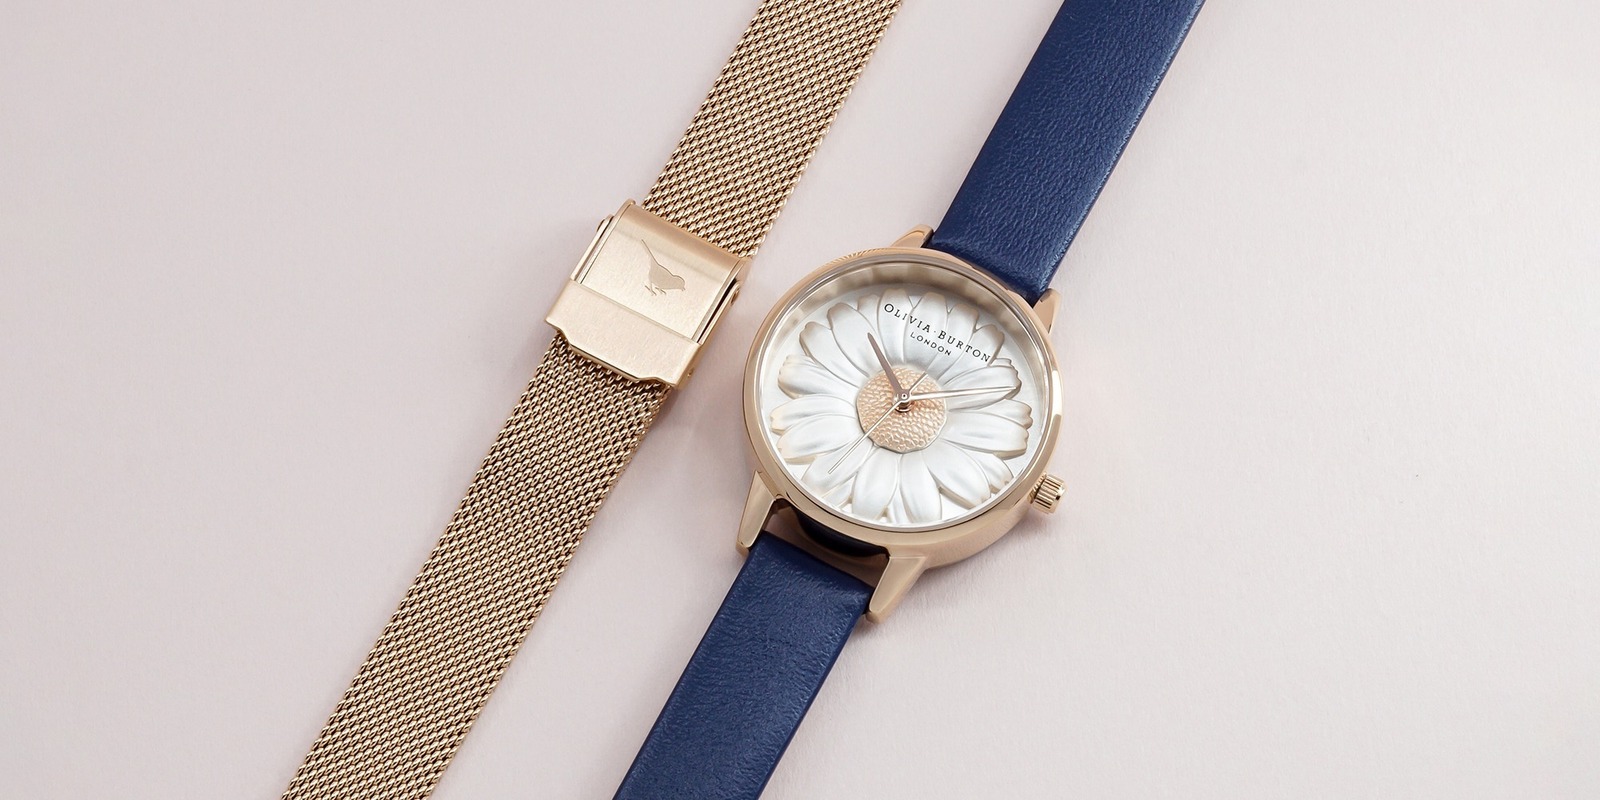 オリビア・バートンのバレンタイン、「3D デイジー」腕時計にネイビー